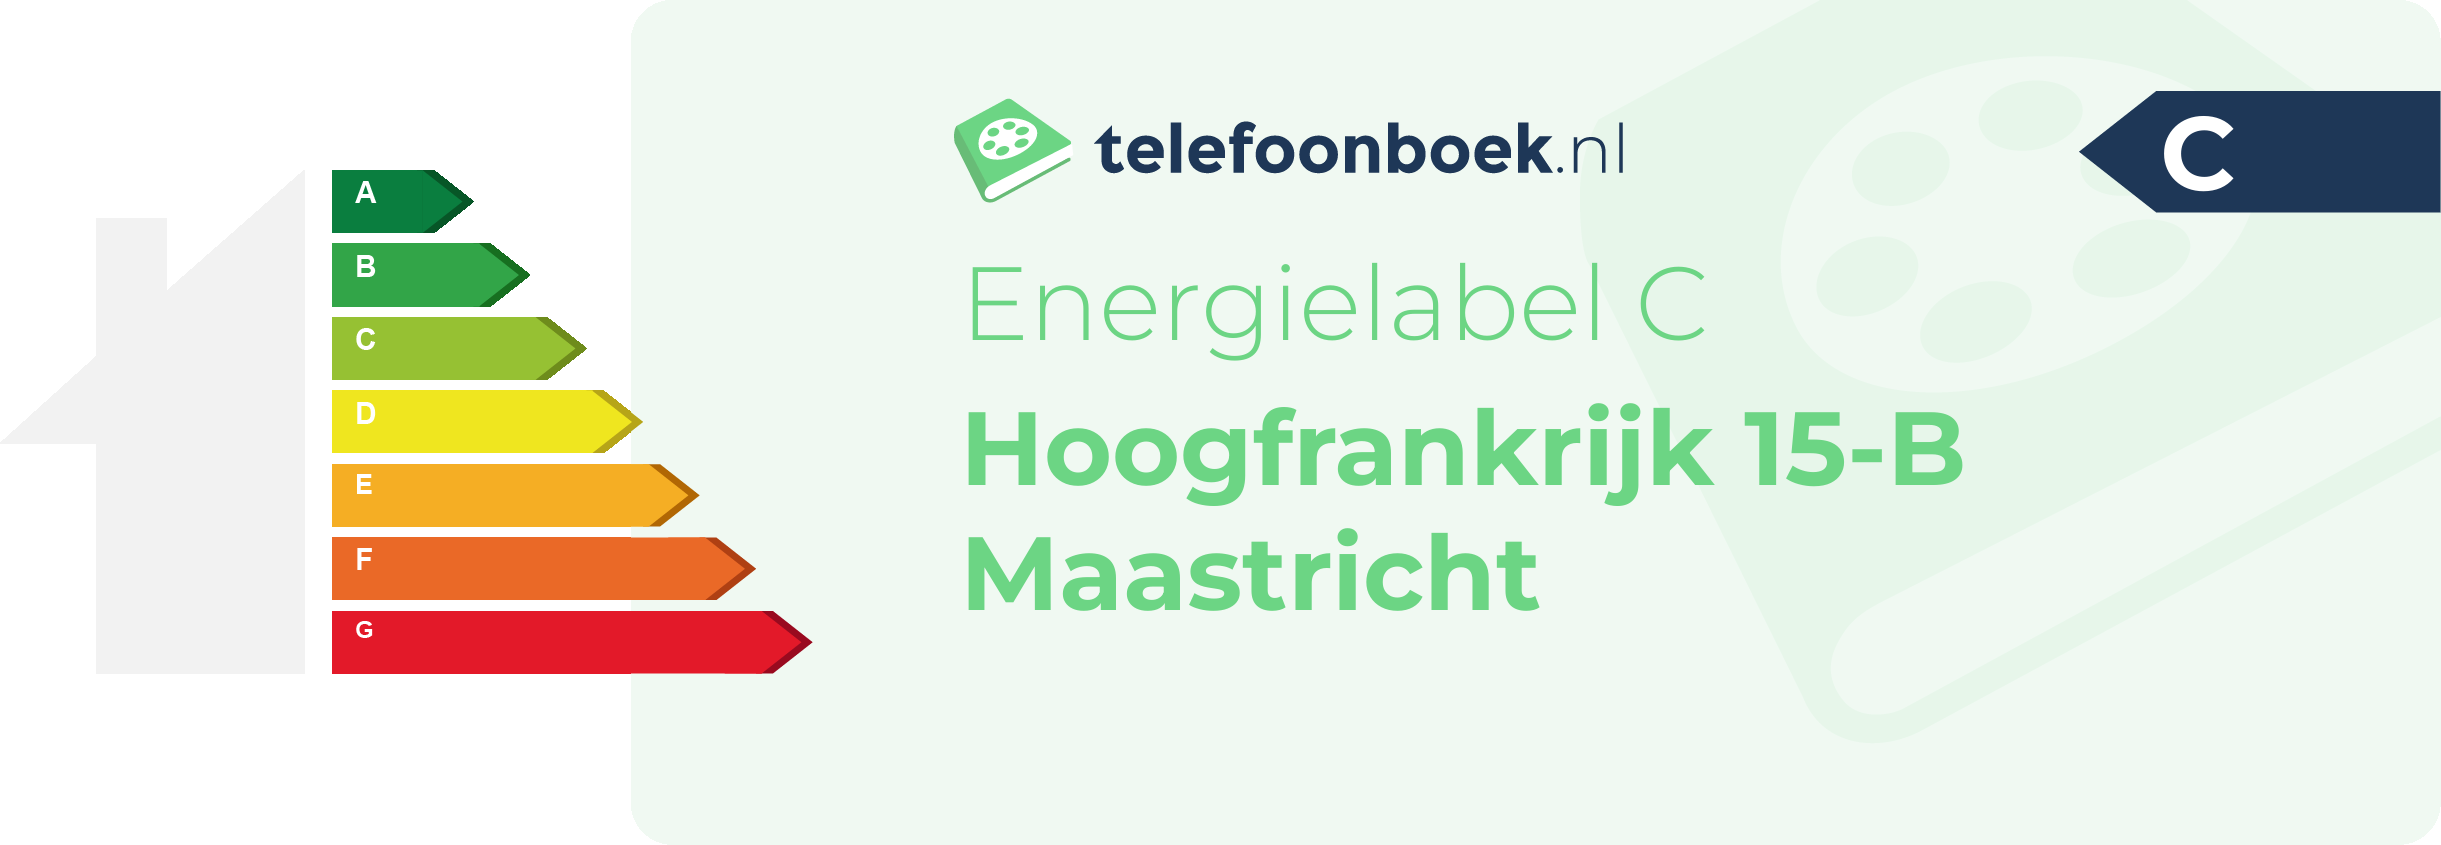 Energielabel Hoogfrankrijk 15-B Maastricht